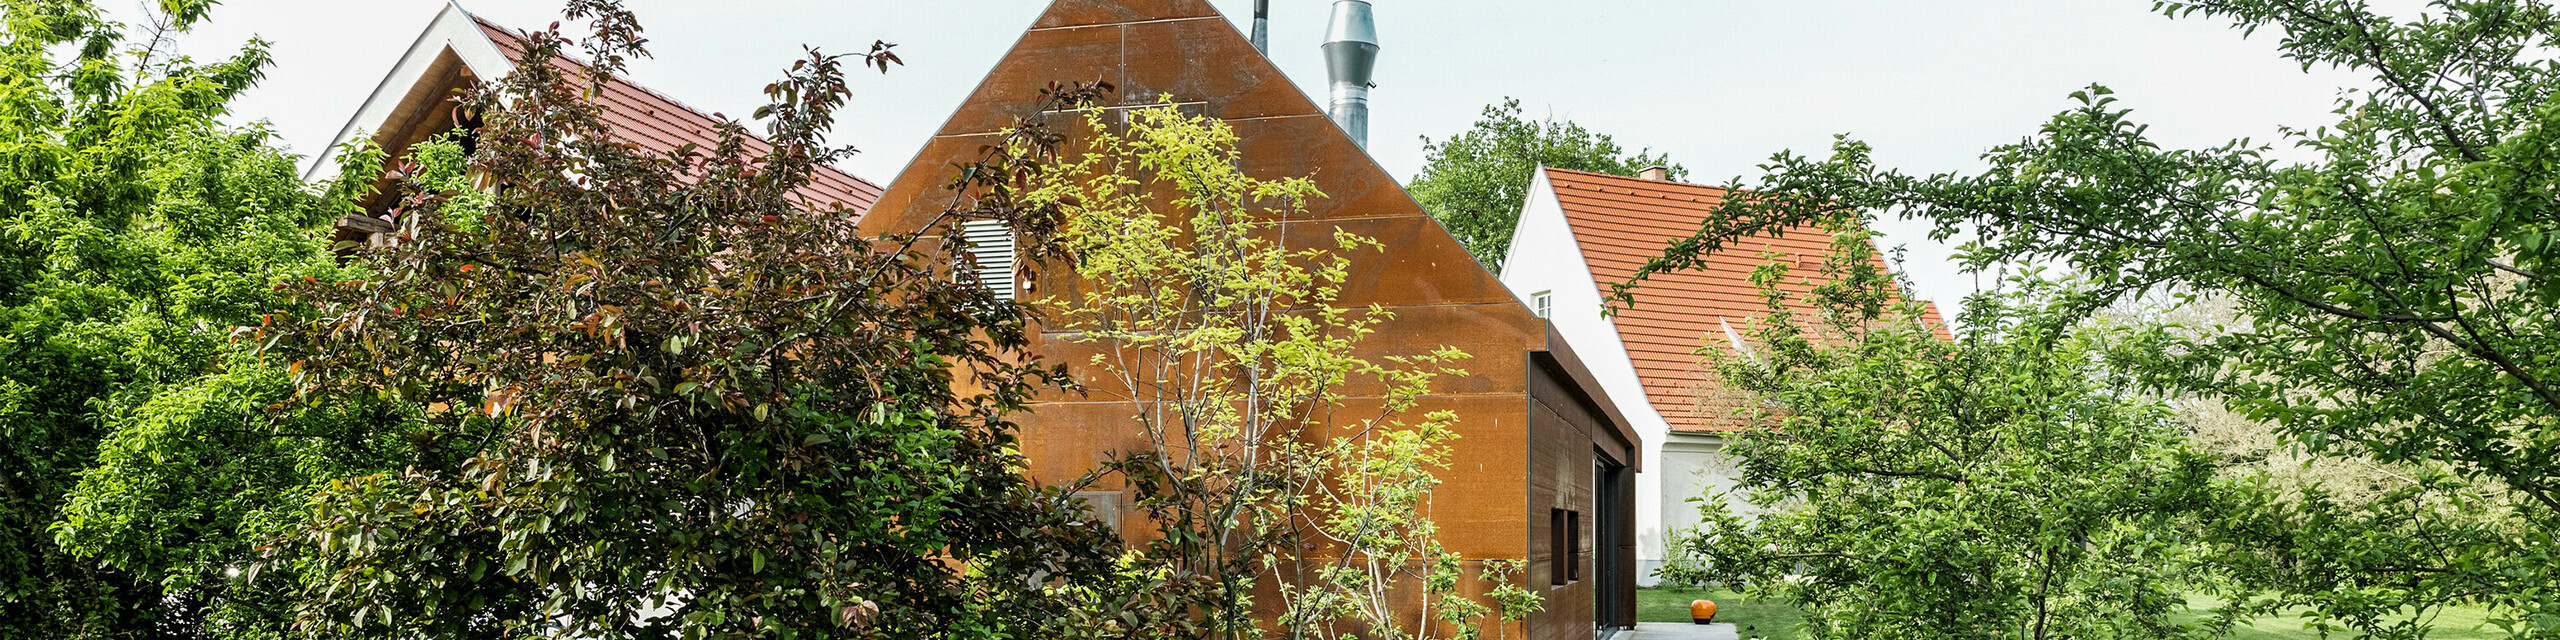 Rezidencia Velich v Seewinkel, Burgenland: pohľad na modernú budovu obklopenú bujnou vegetáciou. Rezidencia slúži ako miesto odborného dialógu PREFARENZEN 2025, v rámci ktorého architekti a odborníci z PREFA vyberajú najzaujímavejšie architektonické projekty. V popredí je vidieť štýlovú kovovú stenu hrdzavej farby s nápisom "RESIDENZ VELICH". Architektúra budovy spája tradičné a moderné prvky a harmonicky zapadá do okolitej prírody.